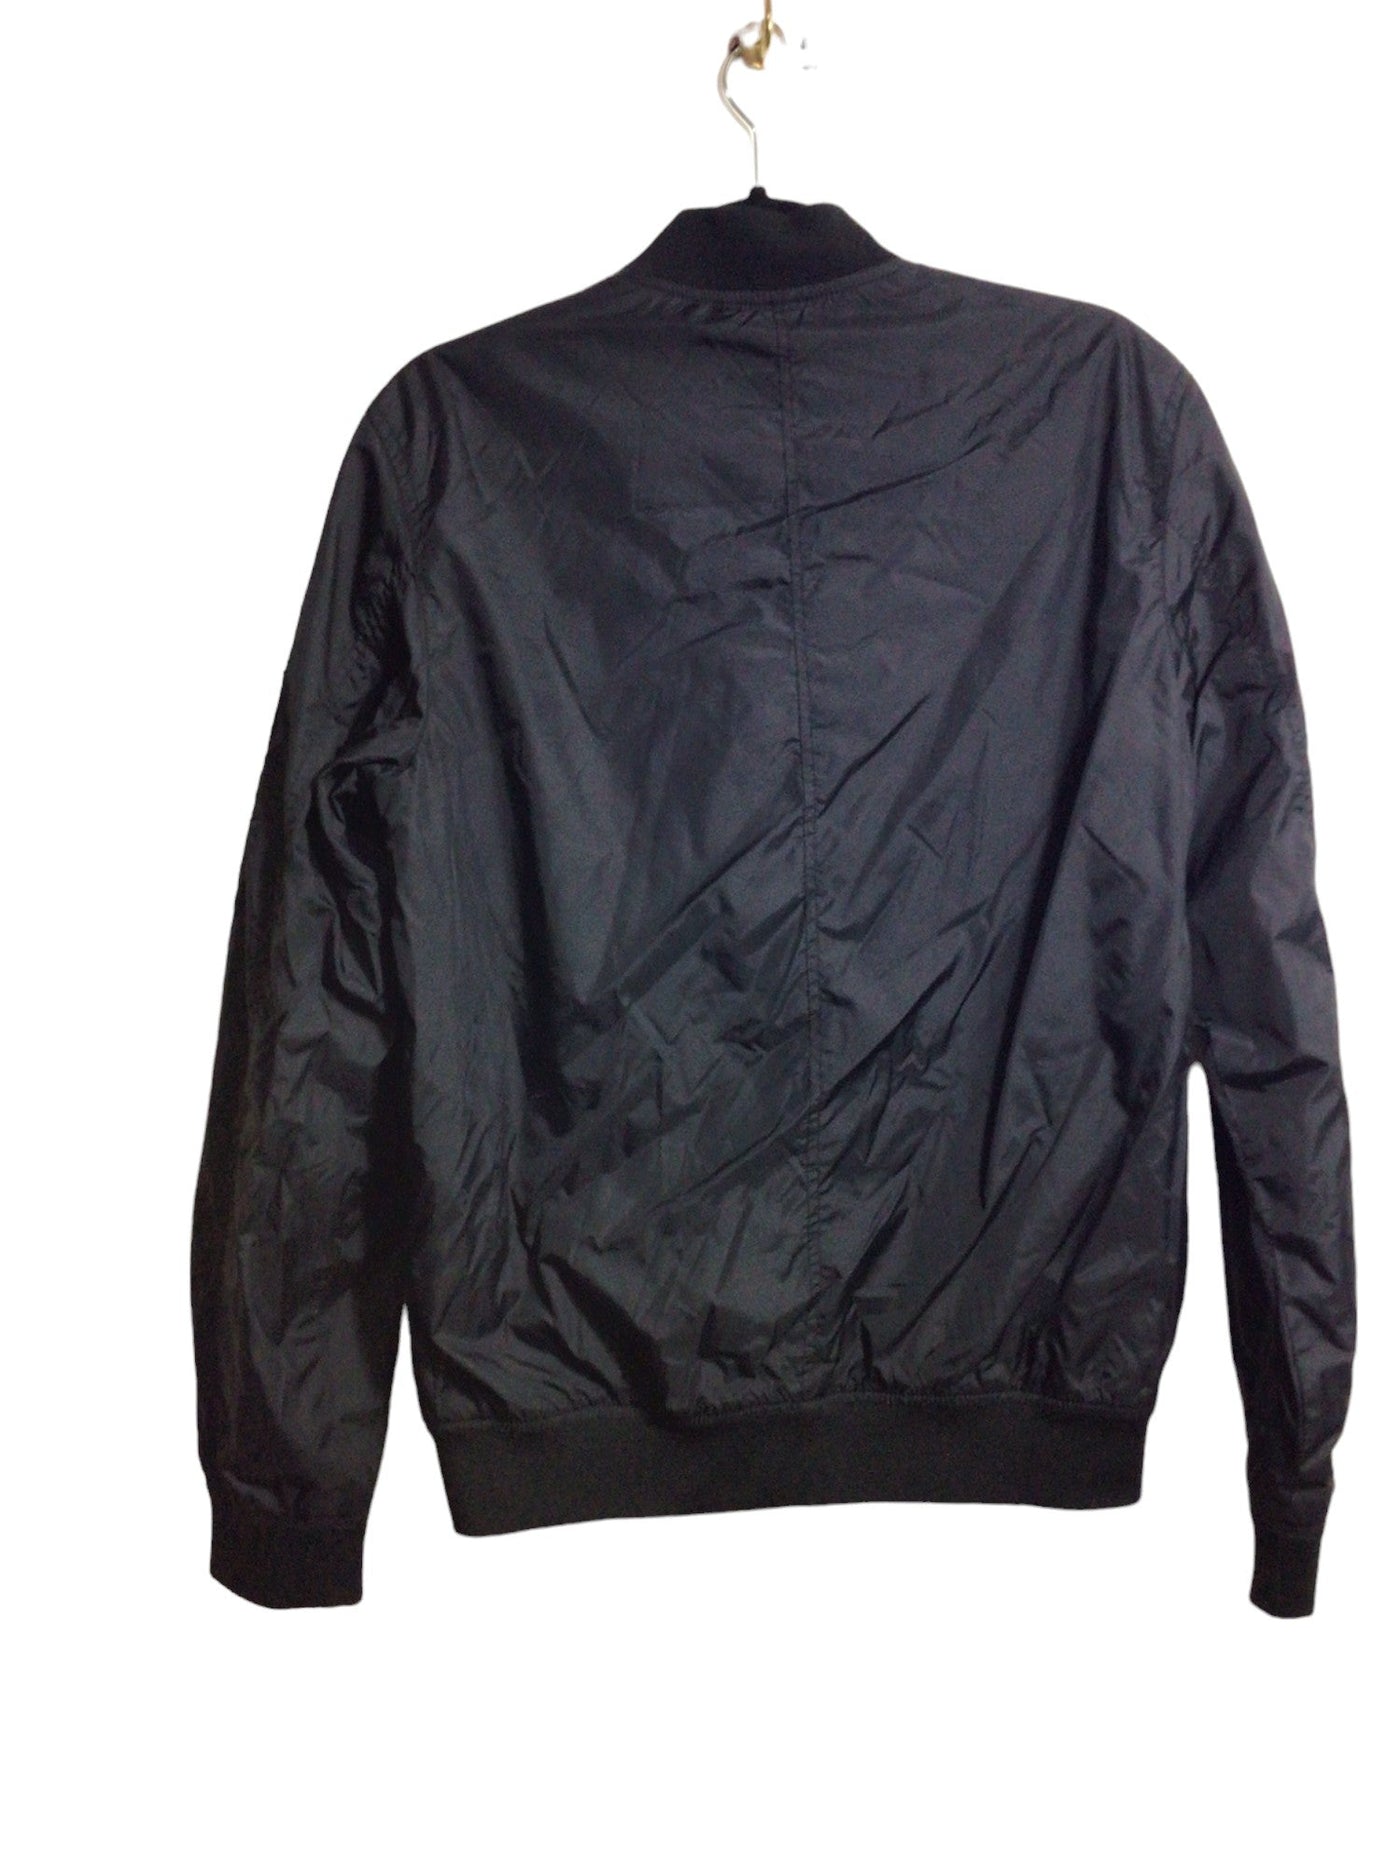 L.O.G.G. Women Jackets Regular fit in Black - Size S | 15 $ KOOP